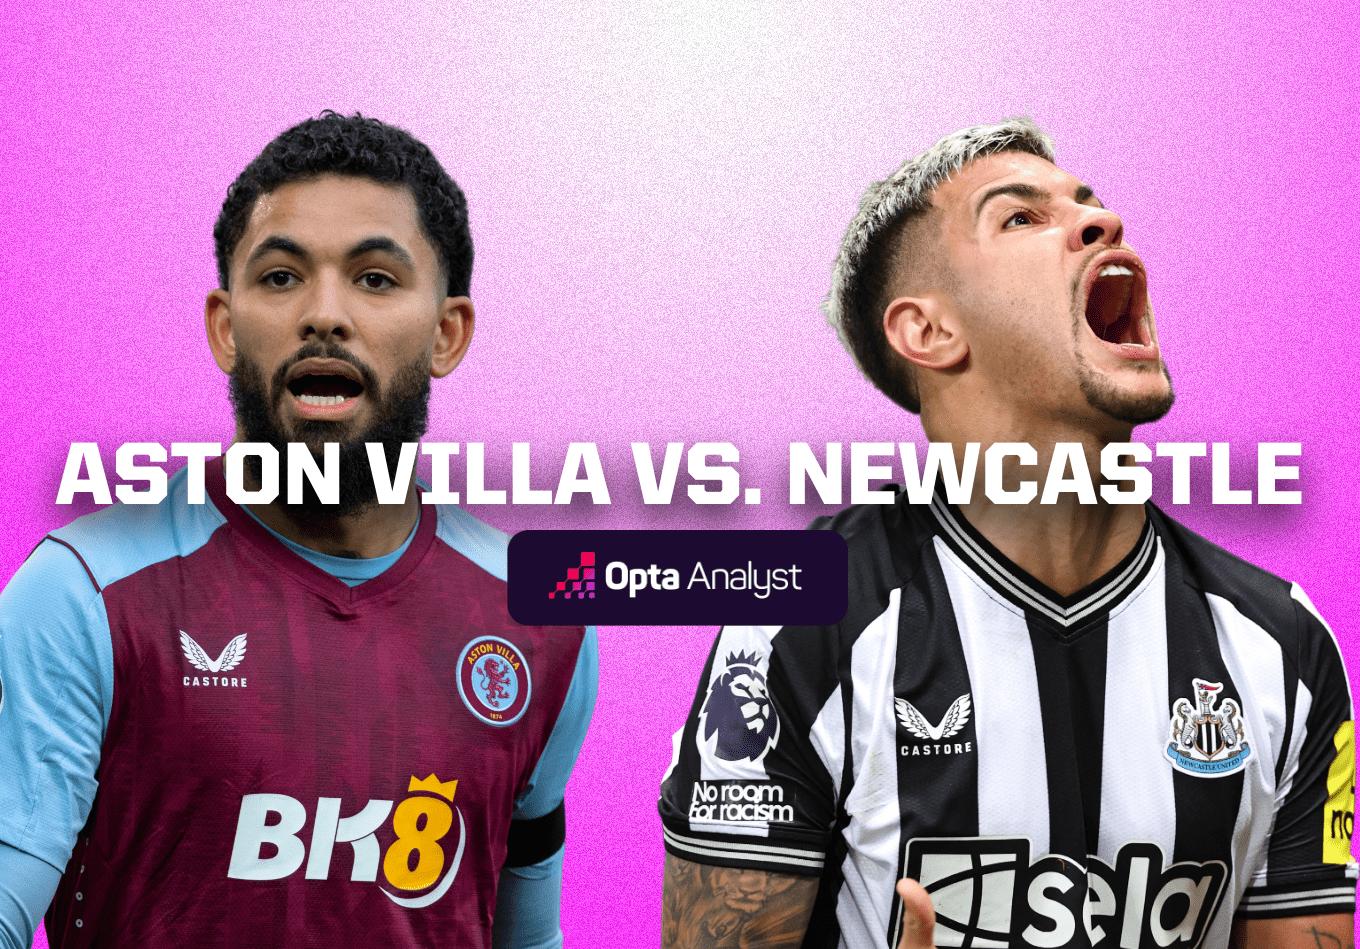 Aston Villa vs Newcastle: Prediction and Preview